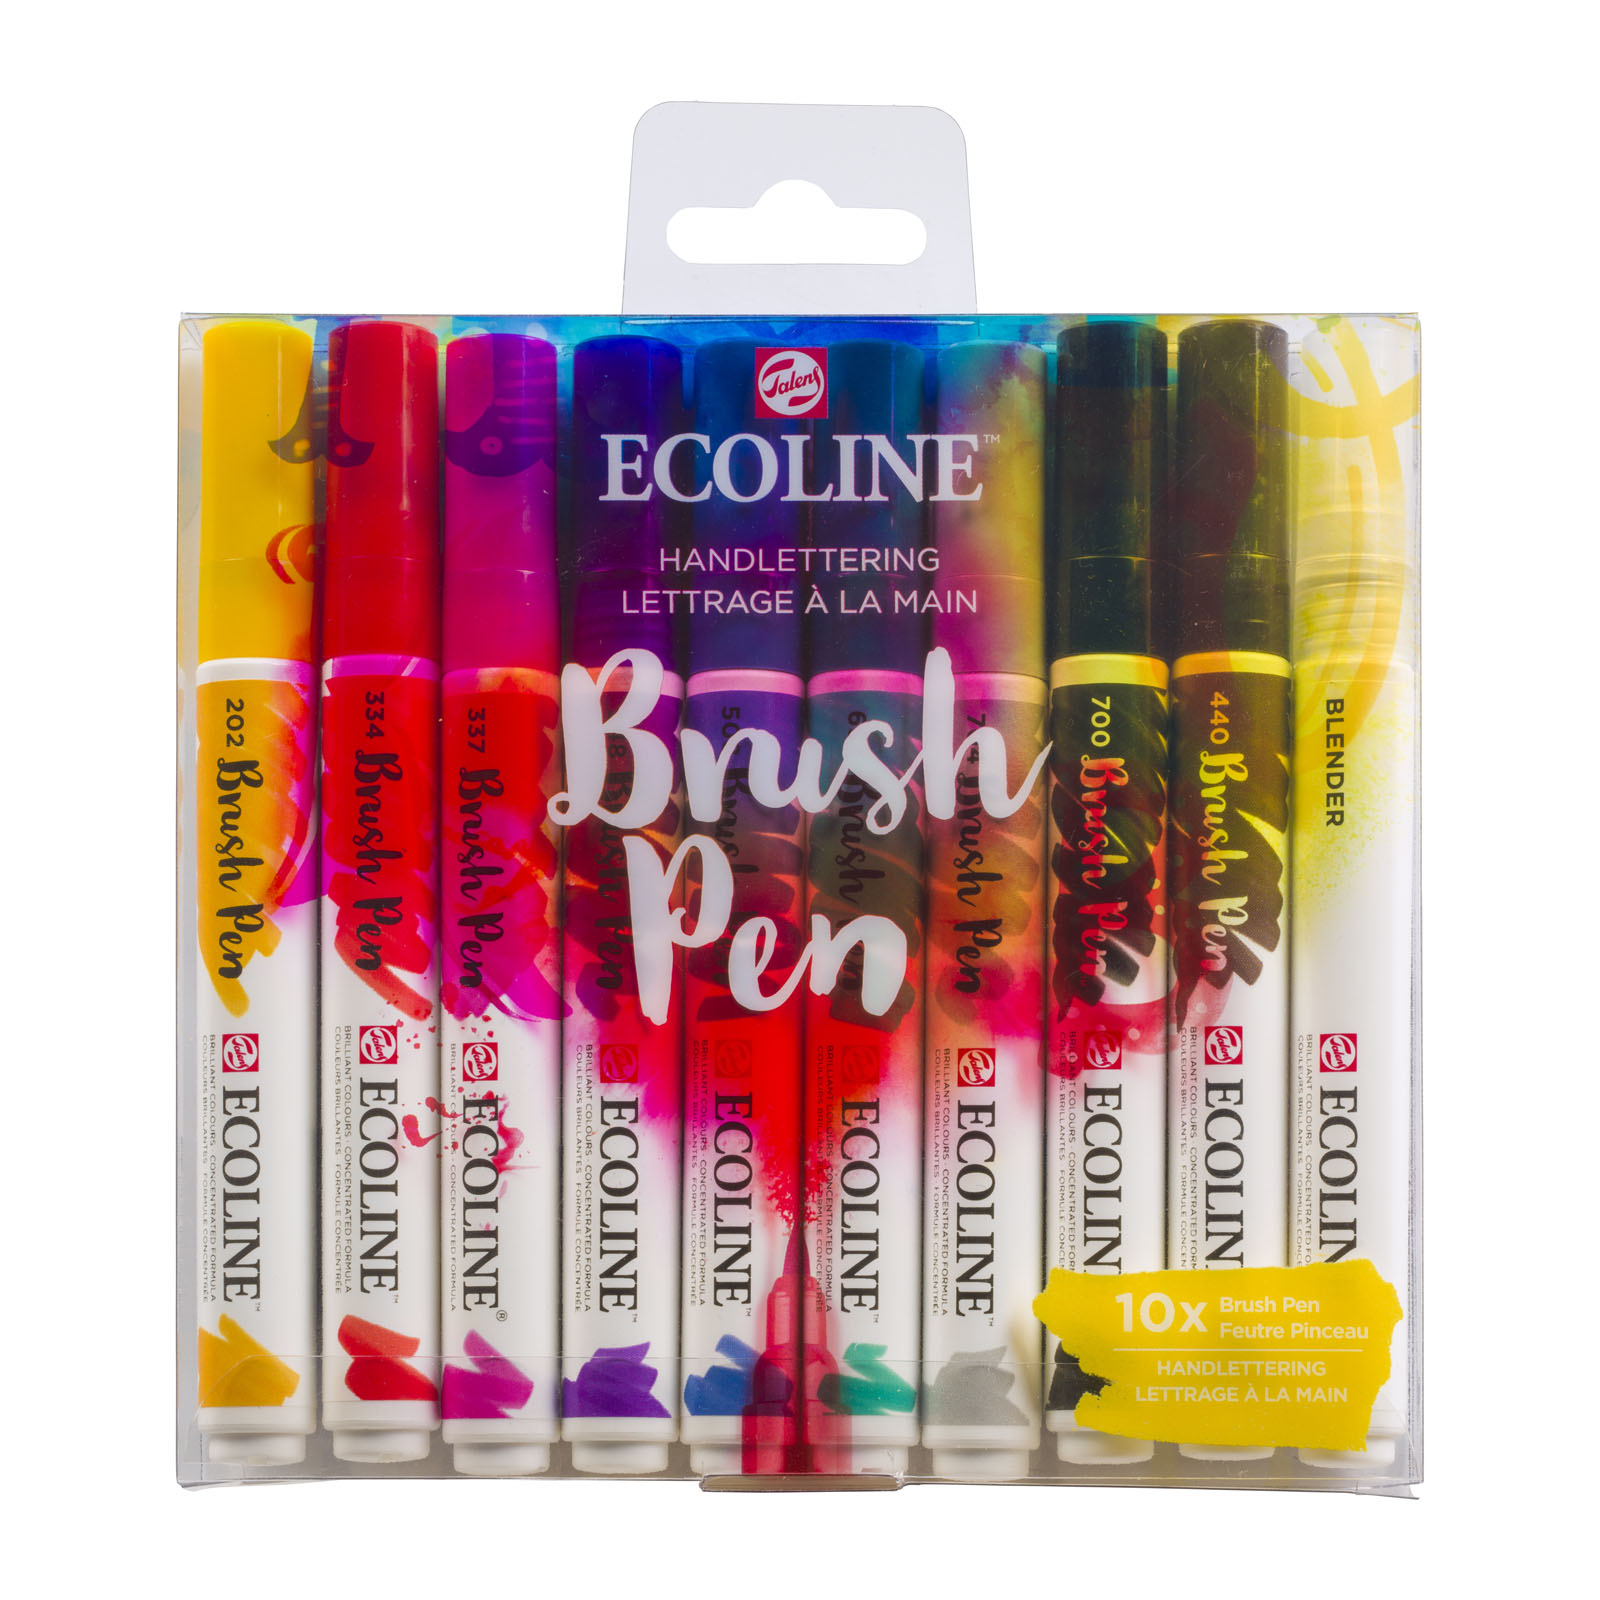 Ecoline • Set avec 10 Brush Pens Lettrage à la main